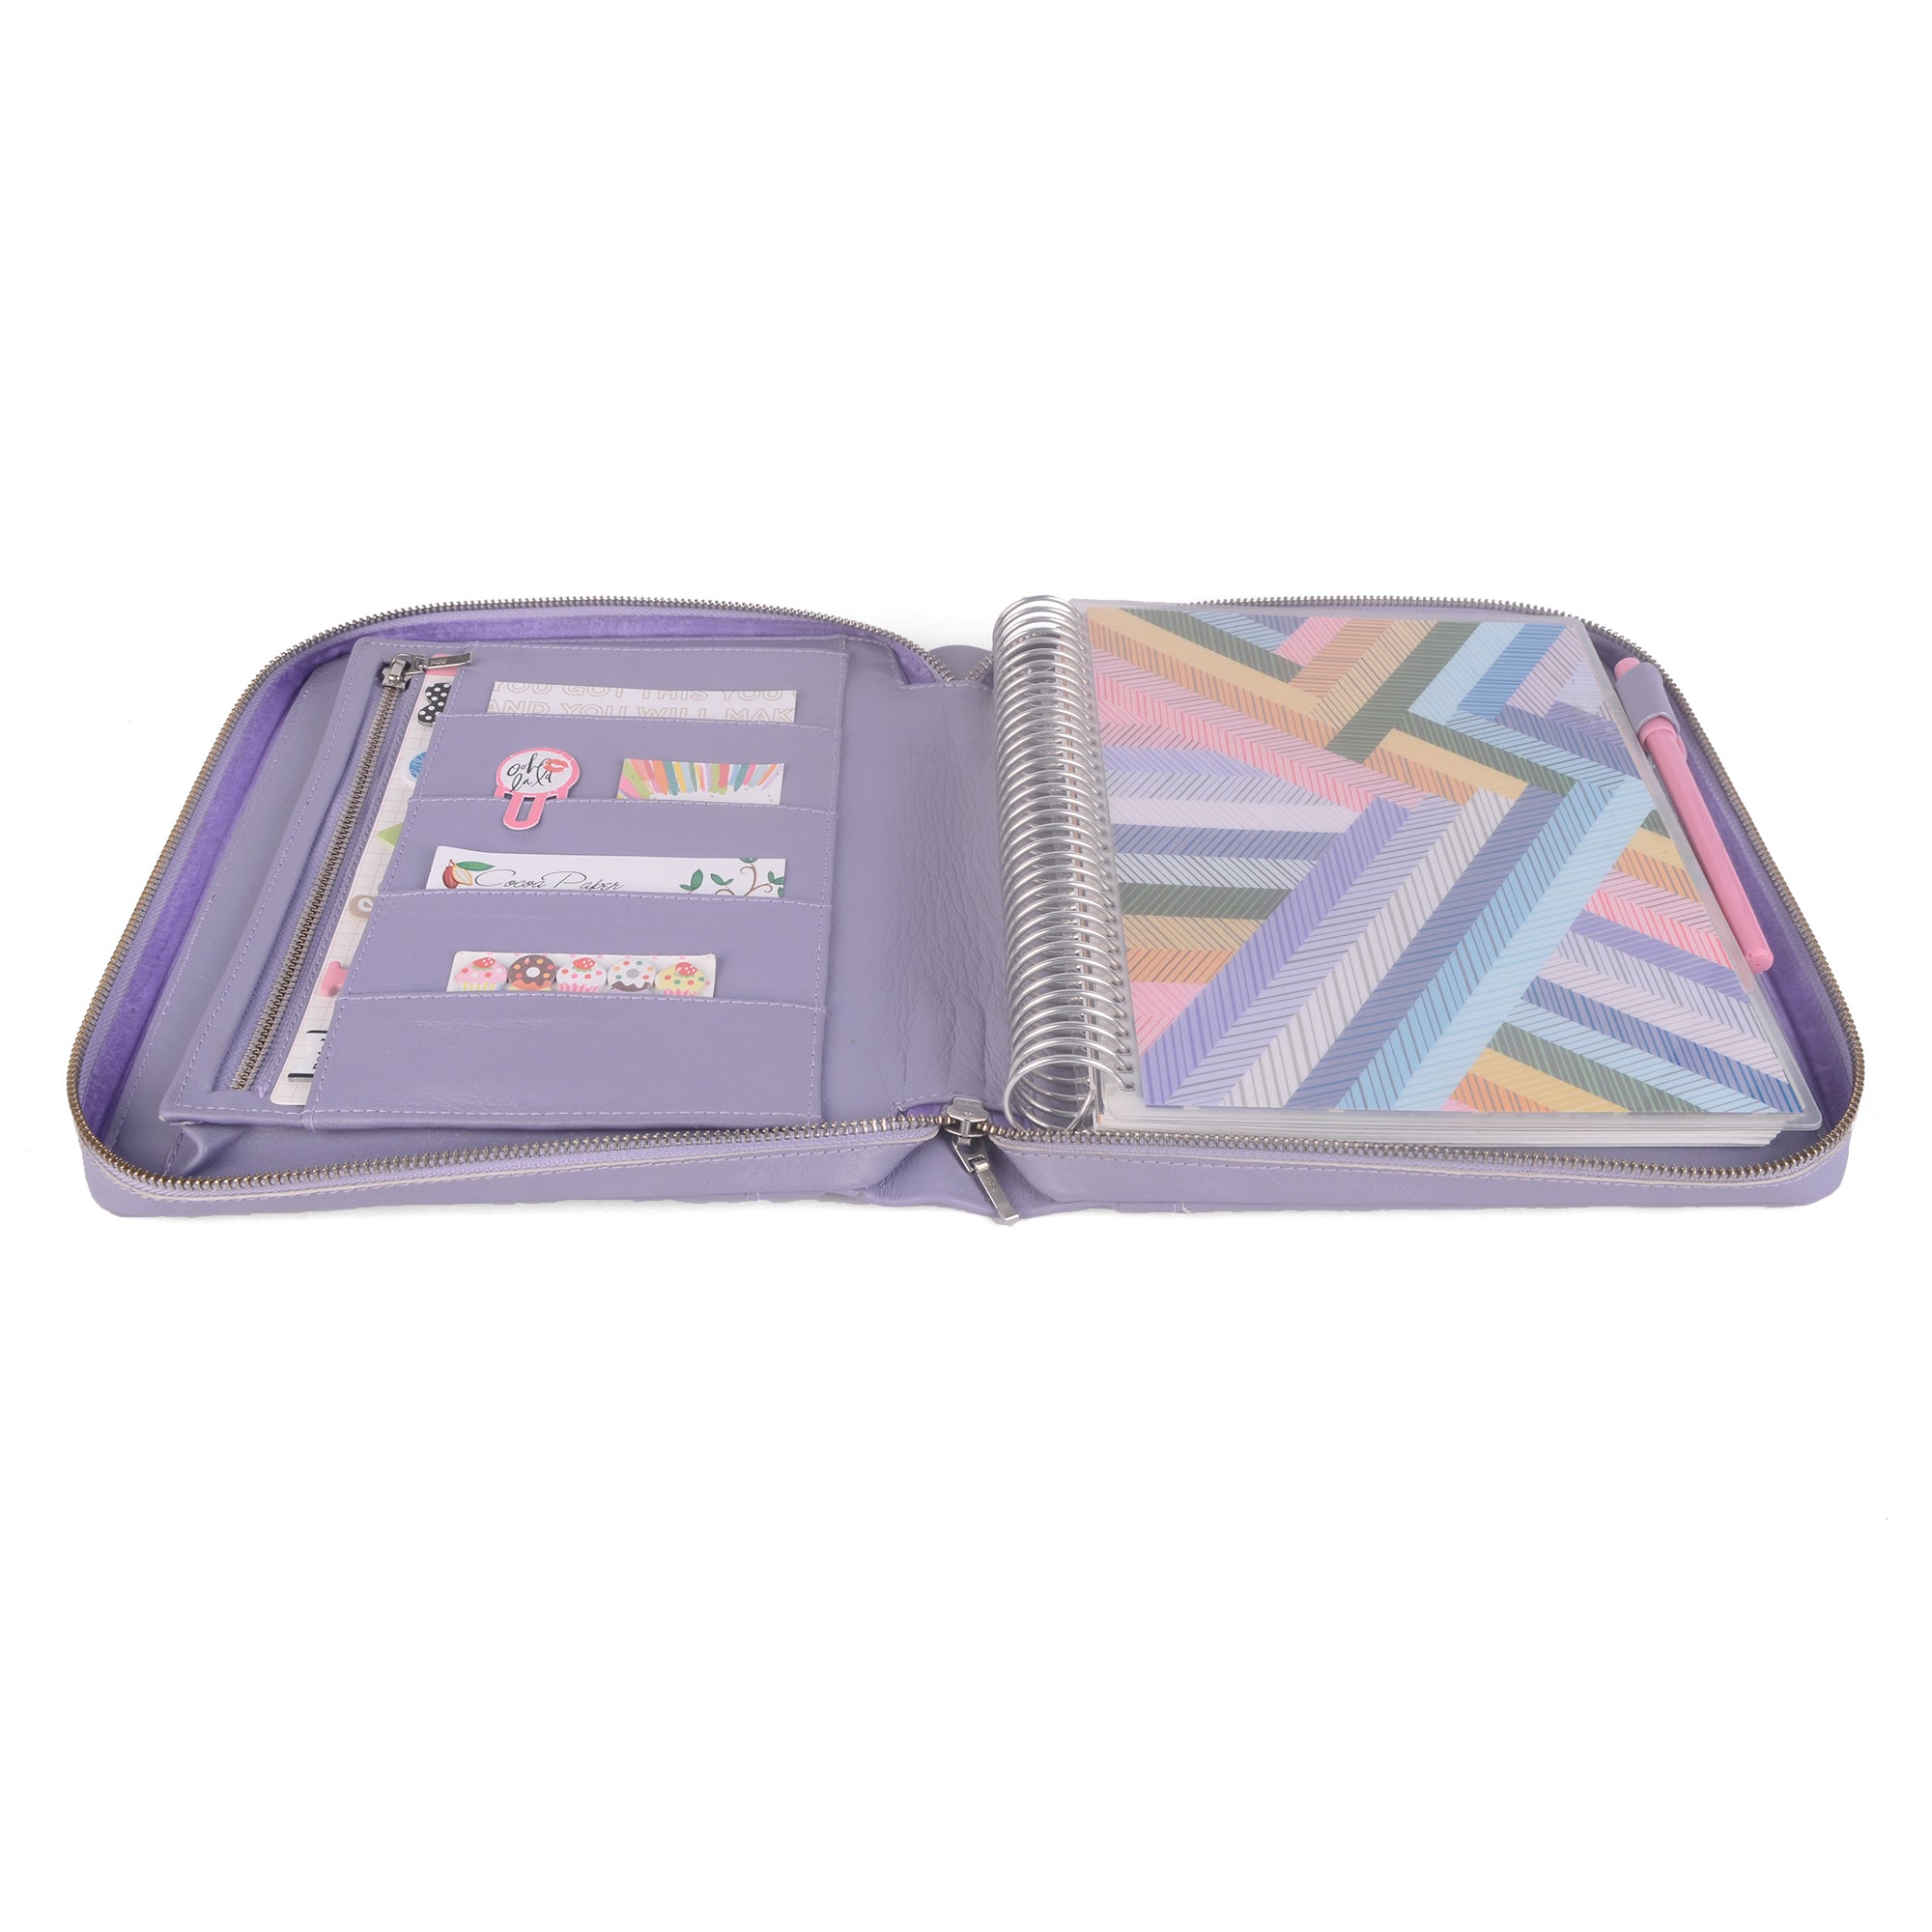 Pen+Gear Disc Planner Accessory Kit, Purple Floral, 9 Pieces